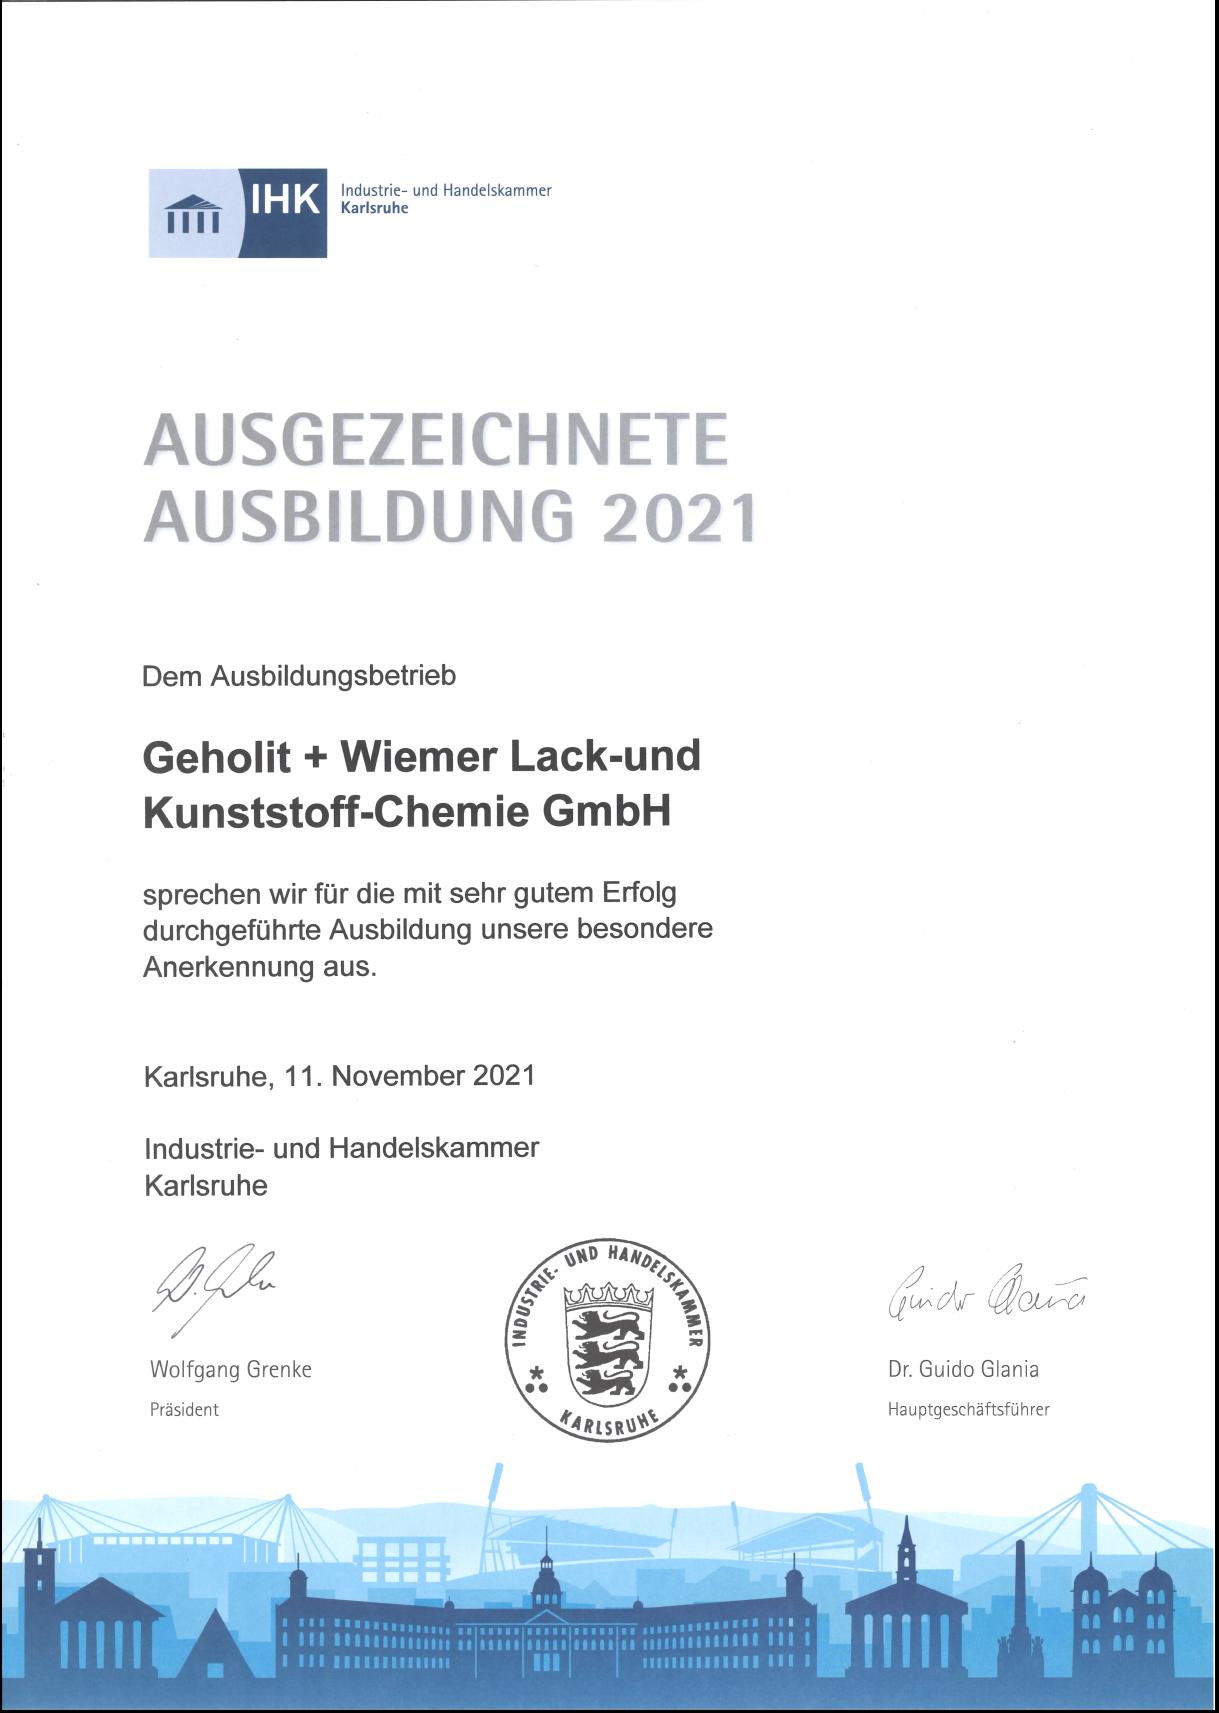 Auszeichnung der IHK Karlsruhe